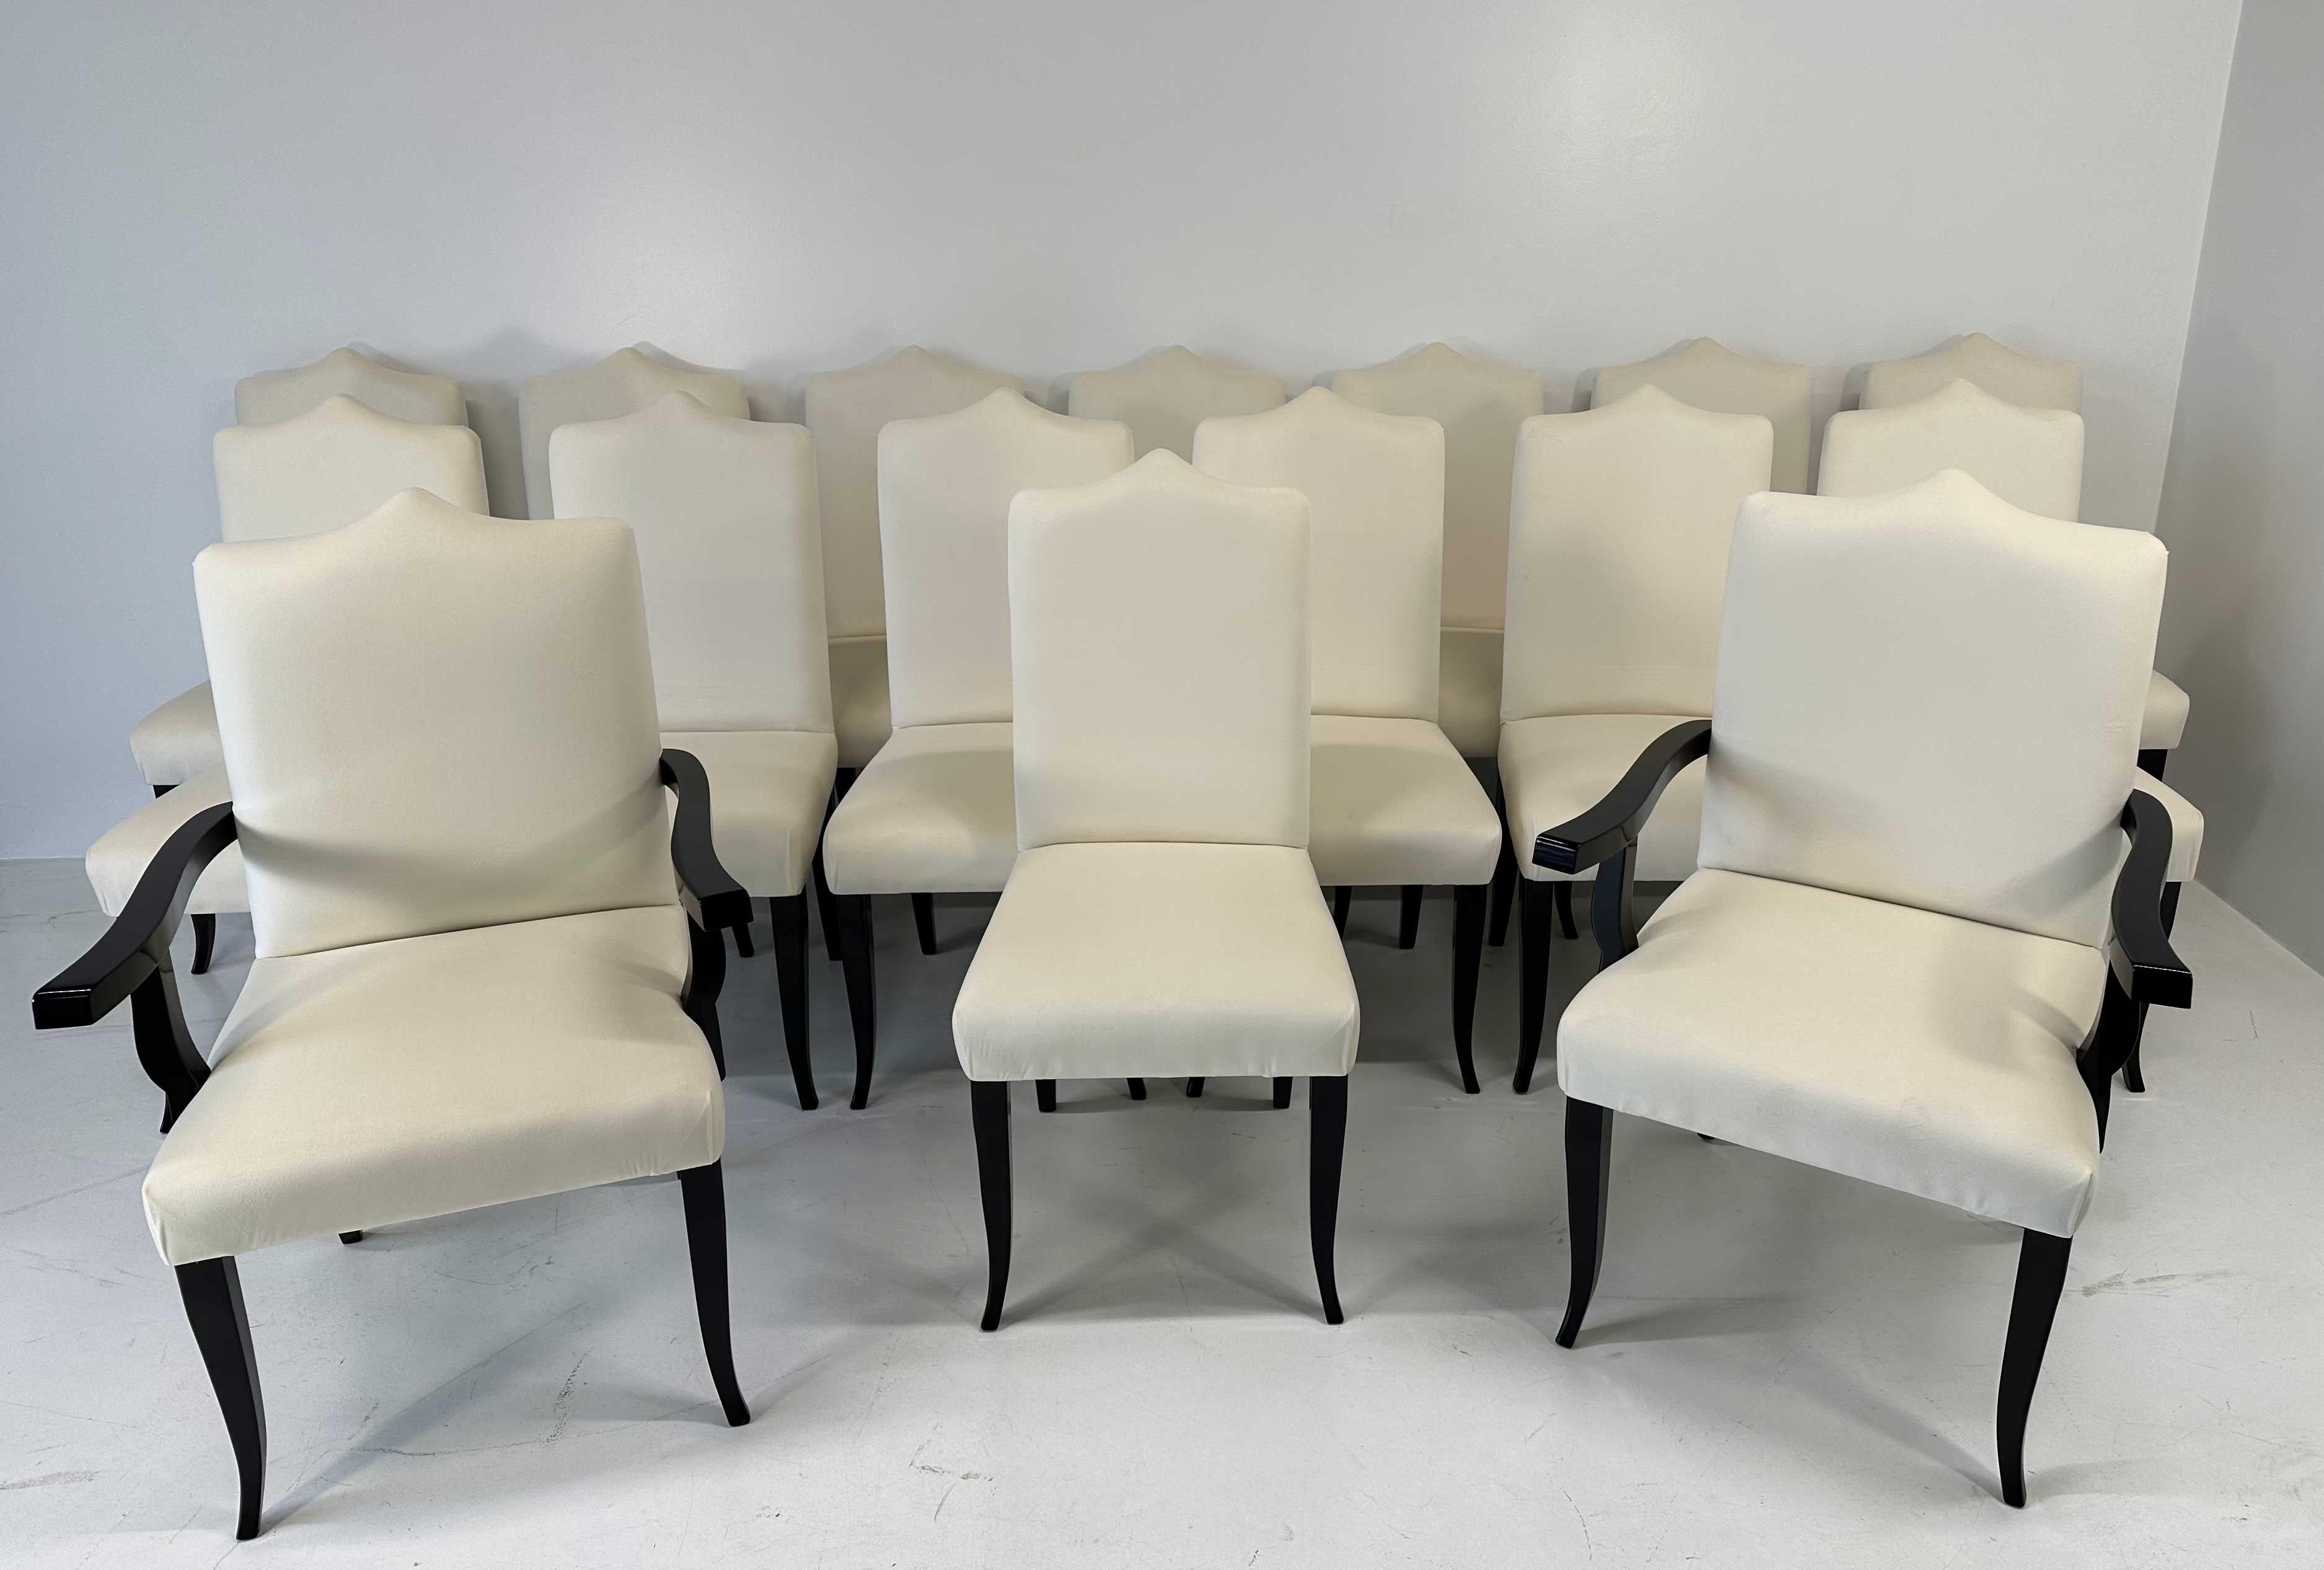 Dieses Set von 16 Stühlen im Art Deco Stil besteht aus 14 Stühlen und 2 Thronen (Stühle mit Armlehnen für die Köpfe des Tisches). Sie wurden in den 1980er Jahren im Norden Italiens hergestellt. 
Sie sind komplett mit einem hochwertigen cremefarbenen